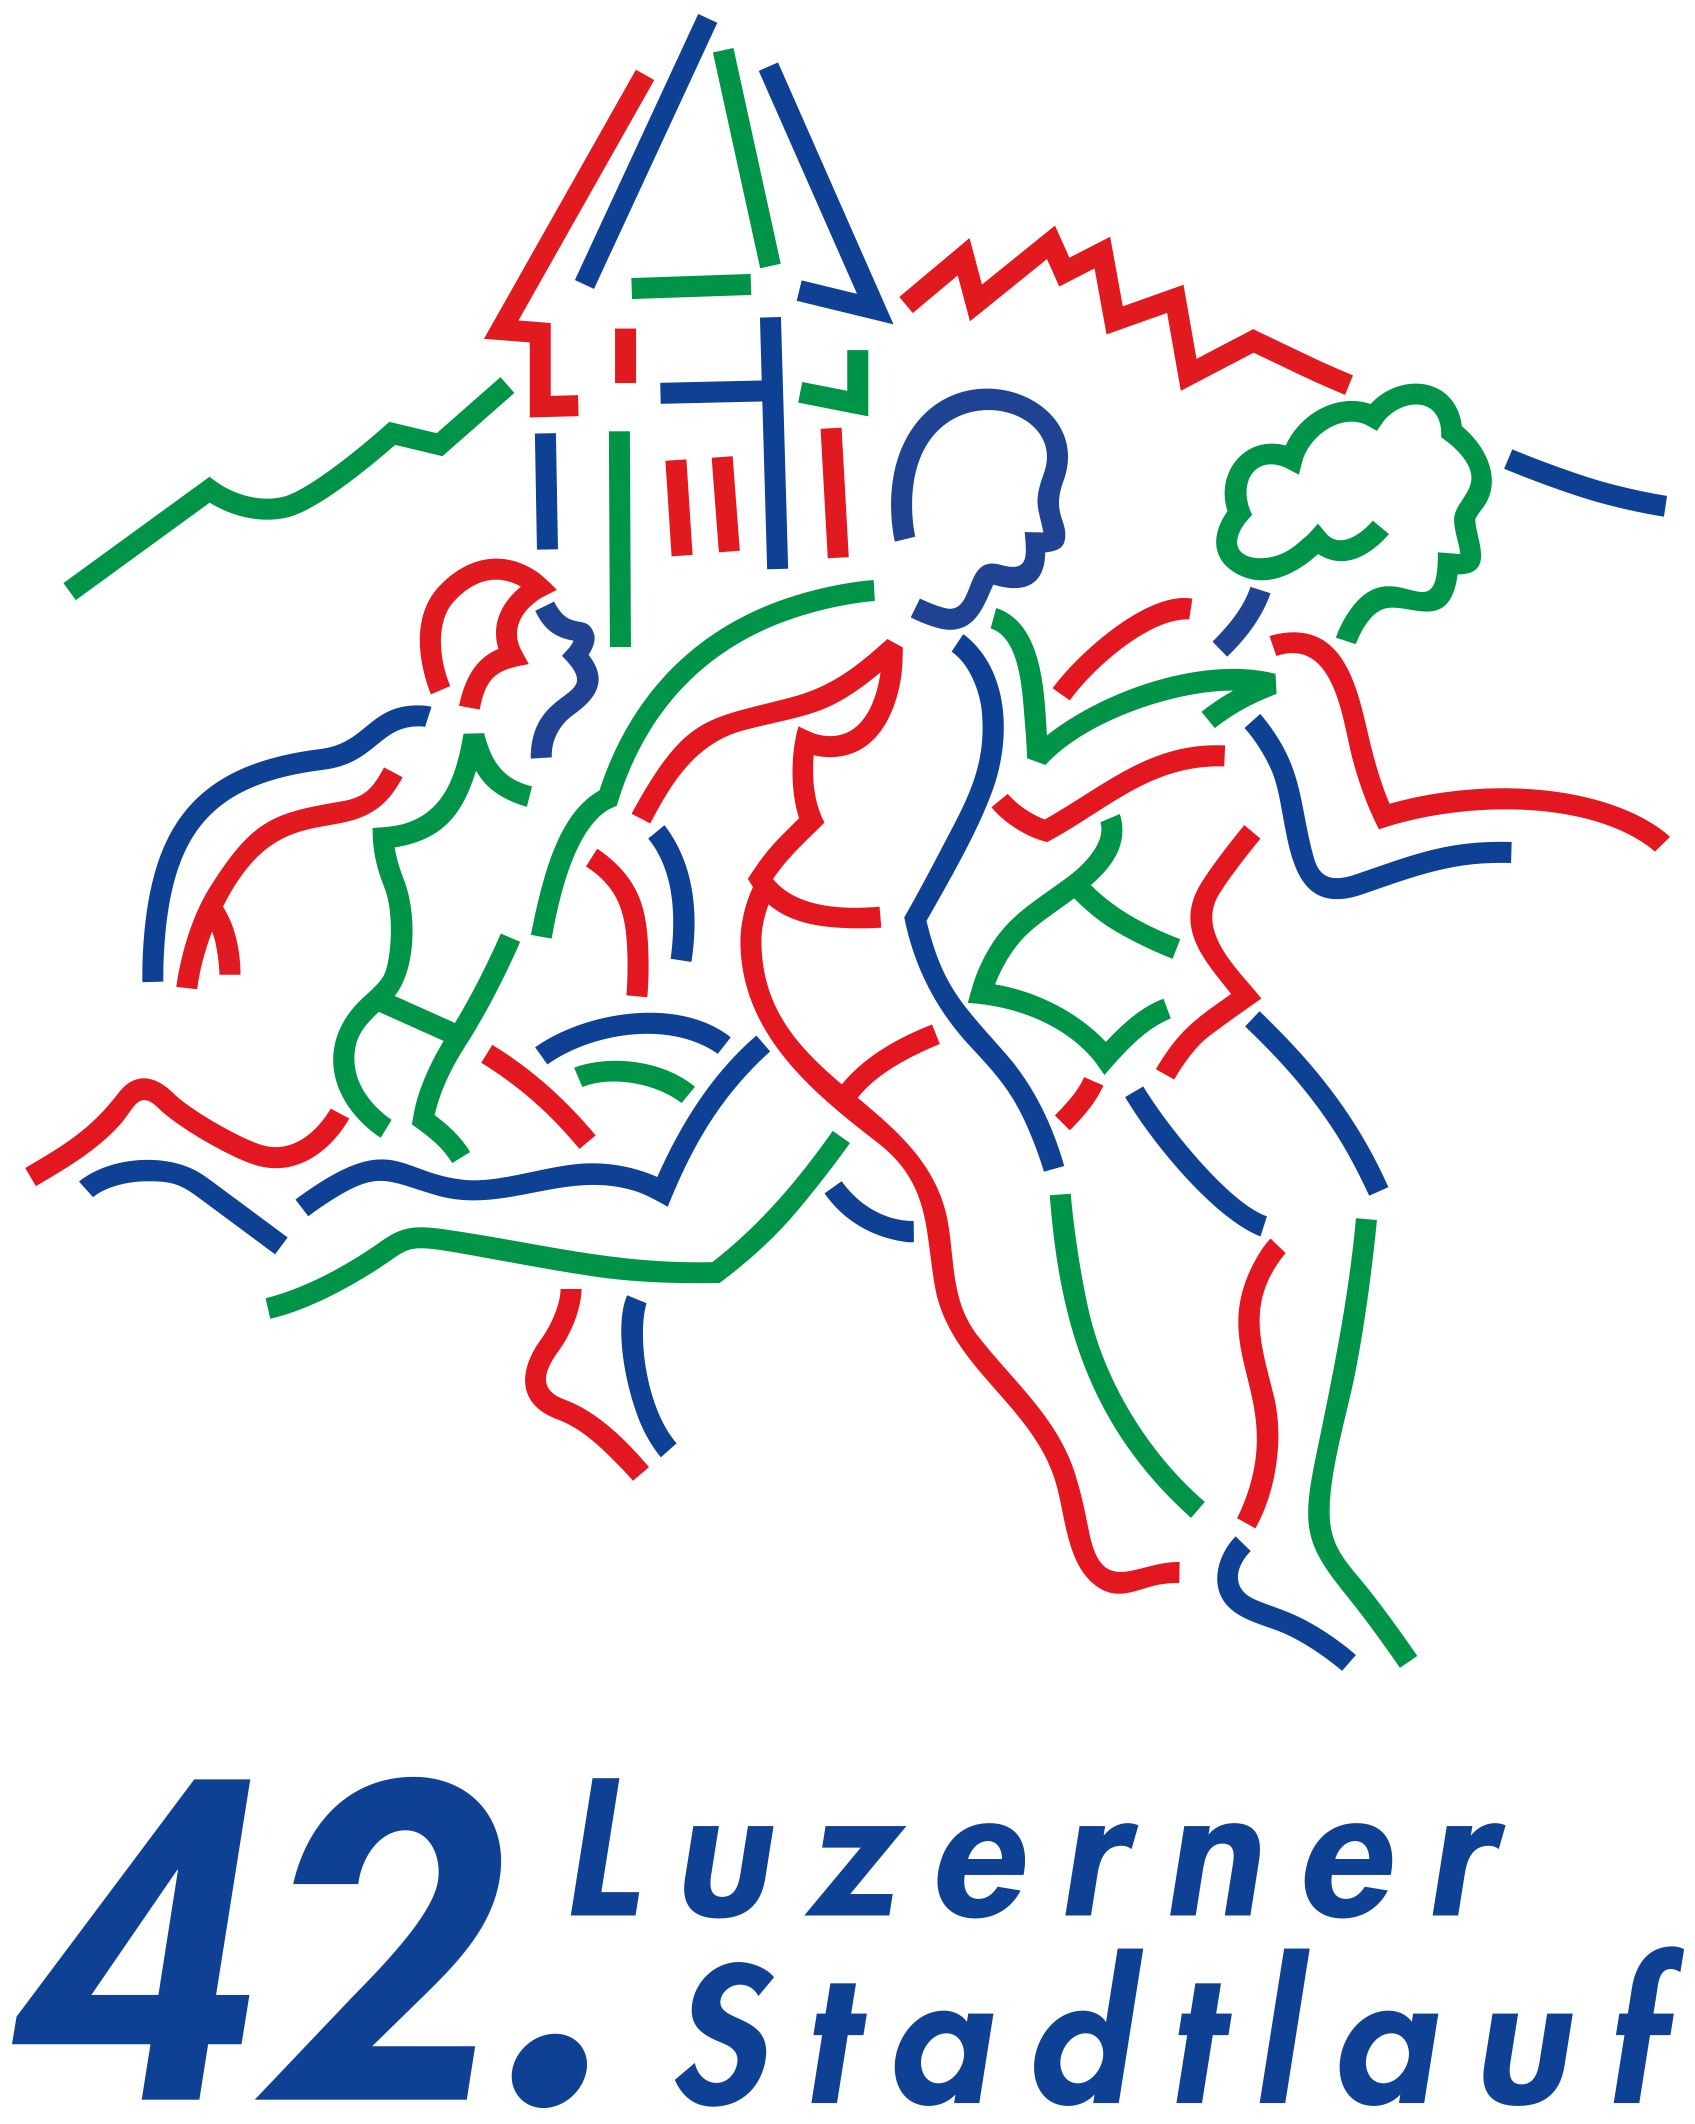 42. Luzerner Stadtlauf